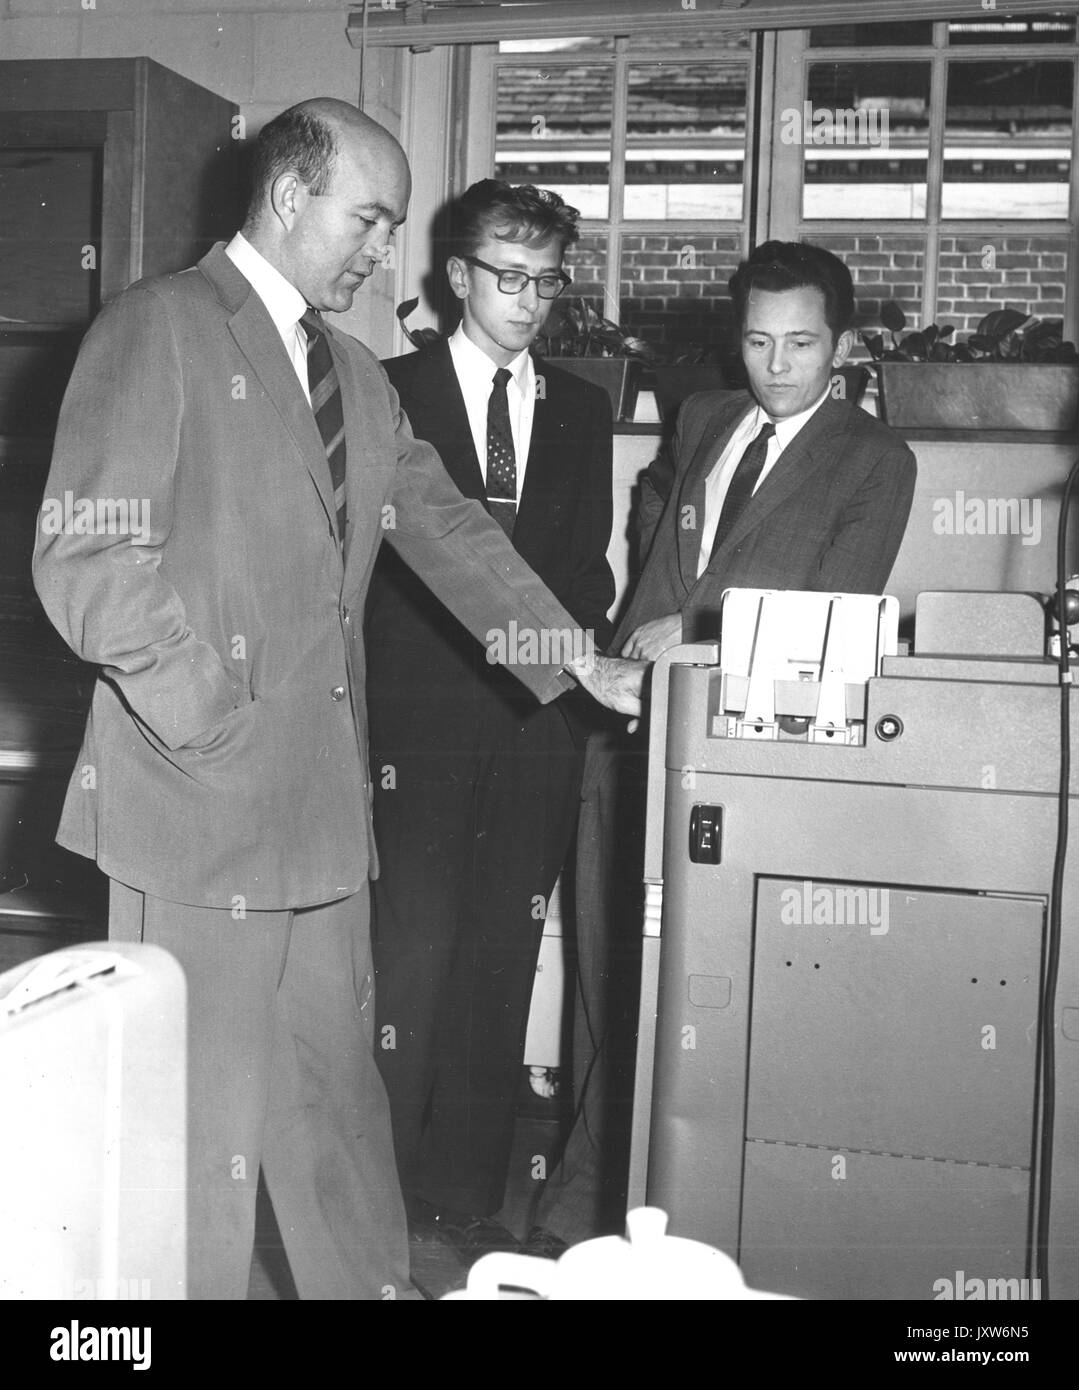 James samuel Coleman, jan hajda, Arthur l stinchcombe, foto di gruppo con stinchcombe e hajda, 1960. Foto Stock